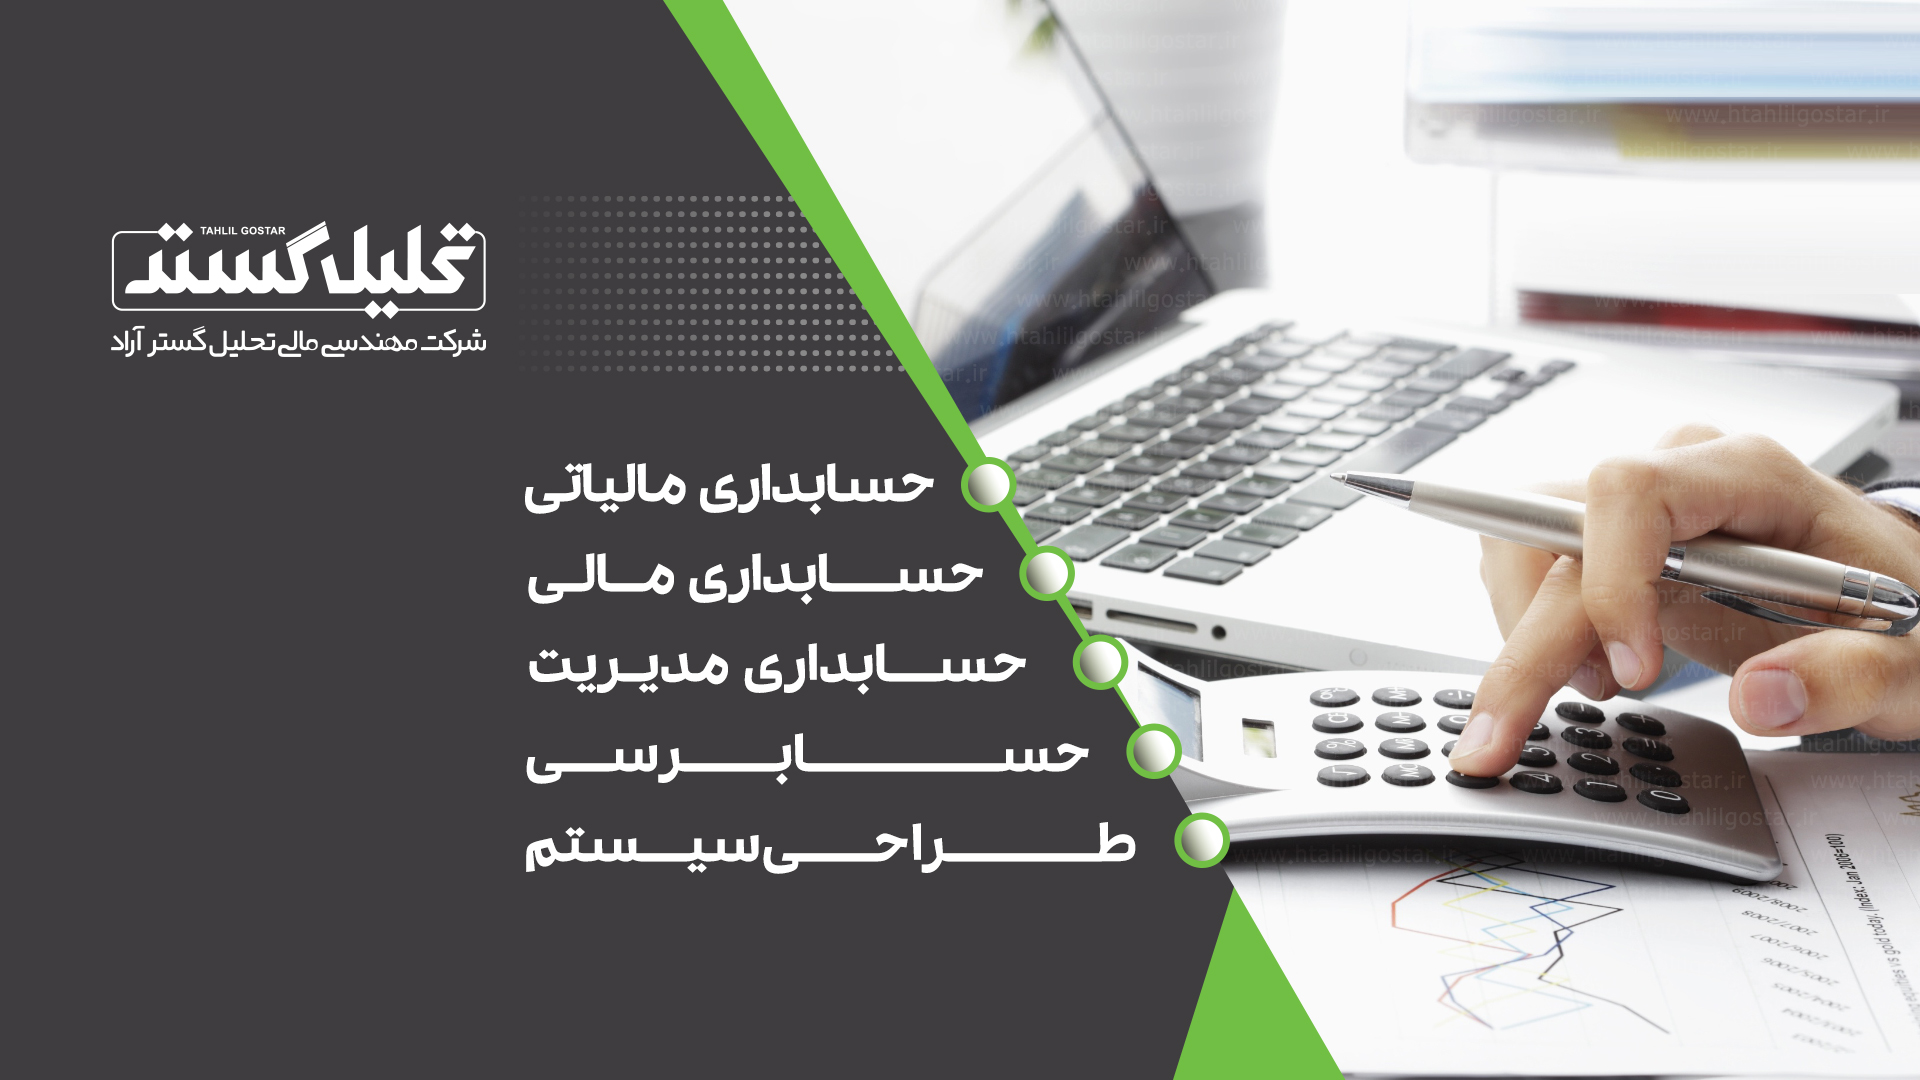 حسابداری شیراز، حسابرسی شیراز، حسابداری، خدمات حسابداری ، حسابداری مالی و مالیاتی شیراز